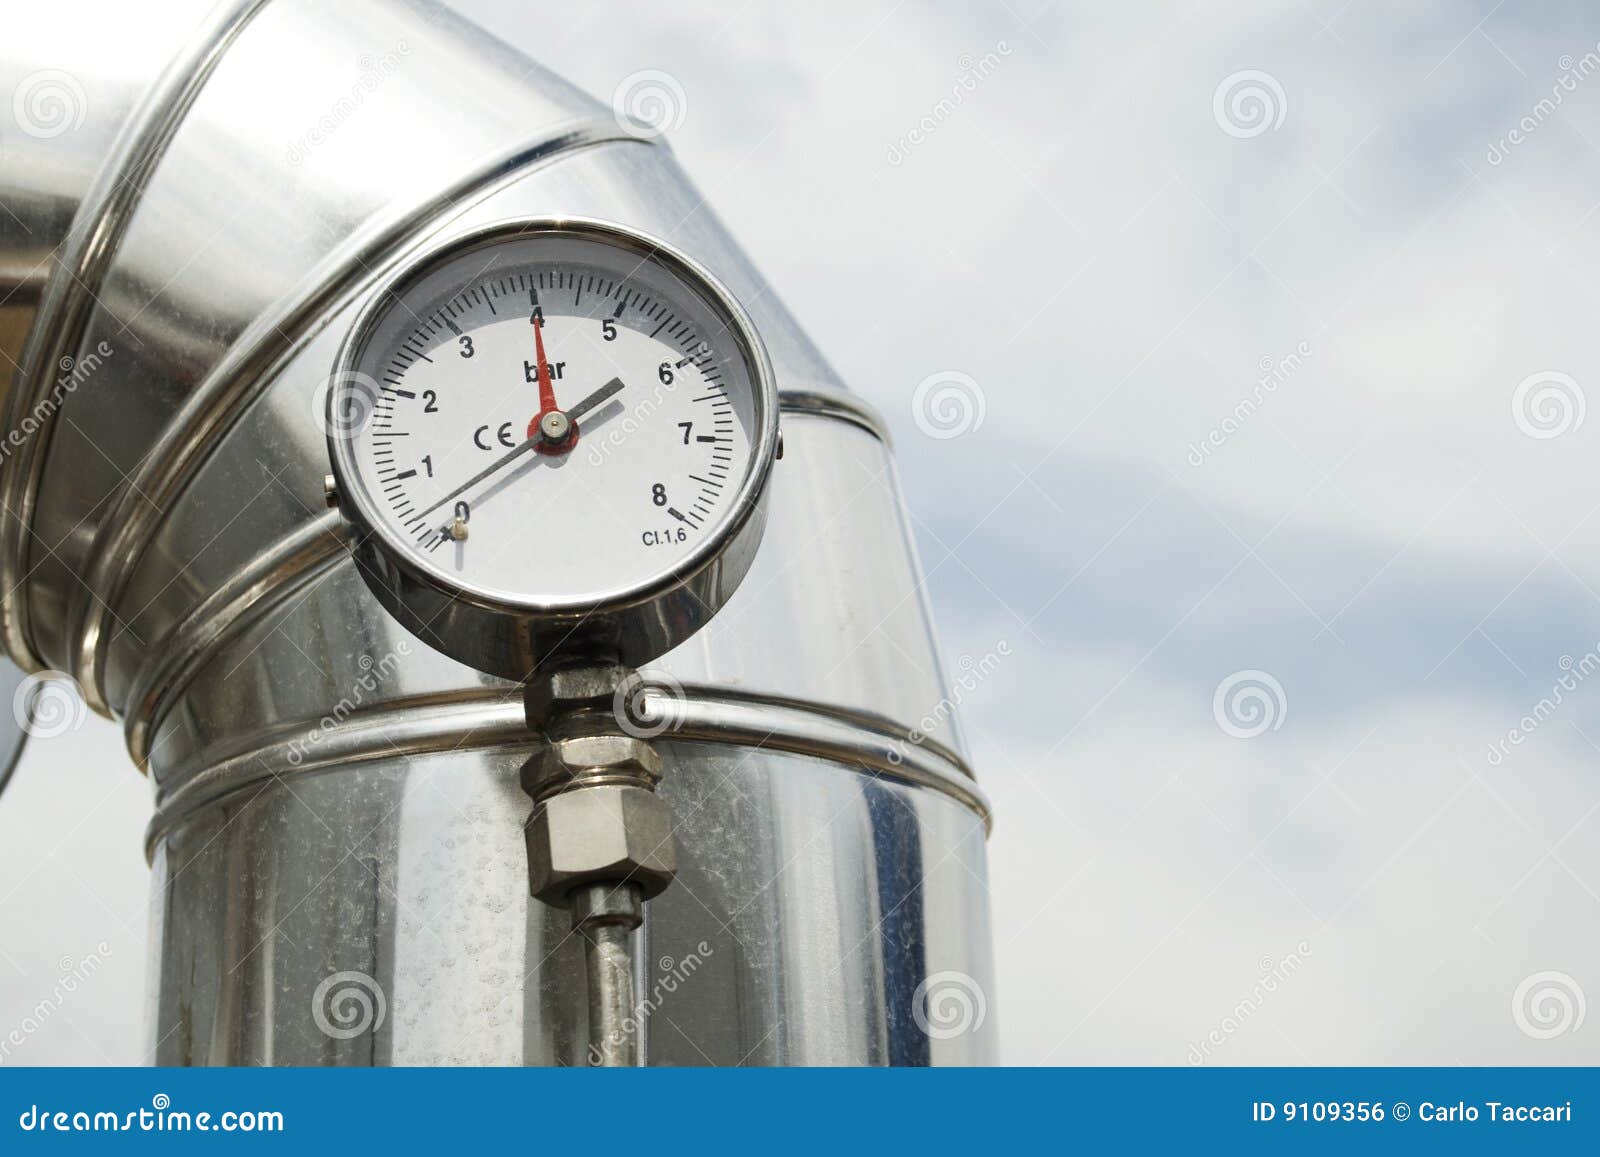 gas pressure manometer